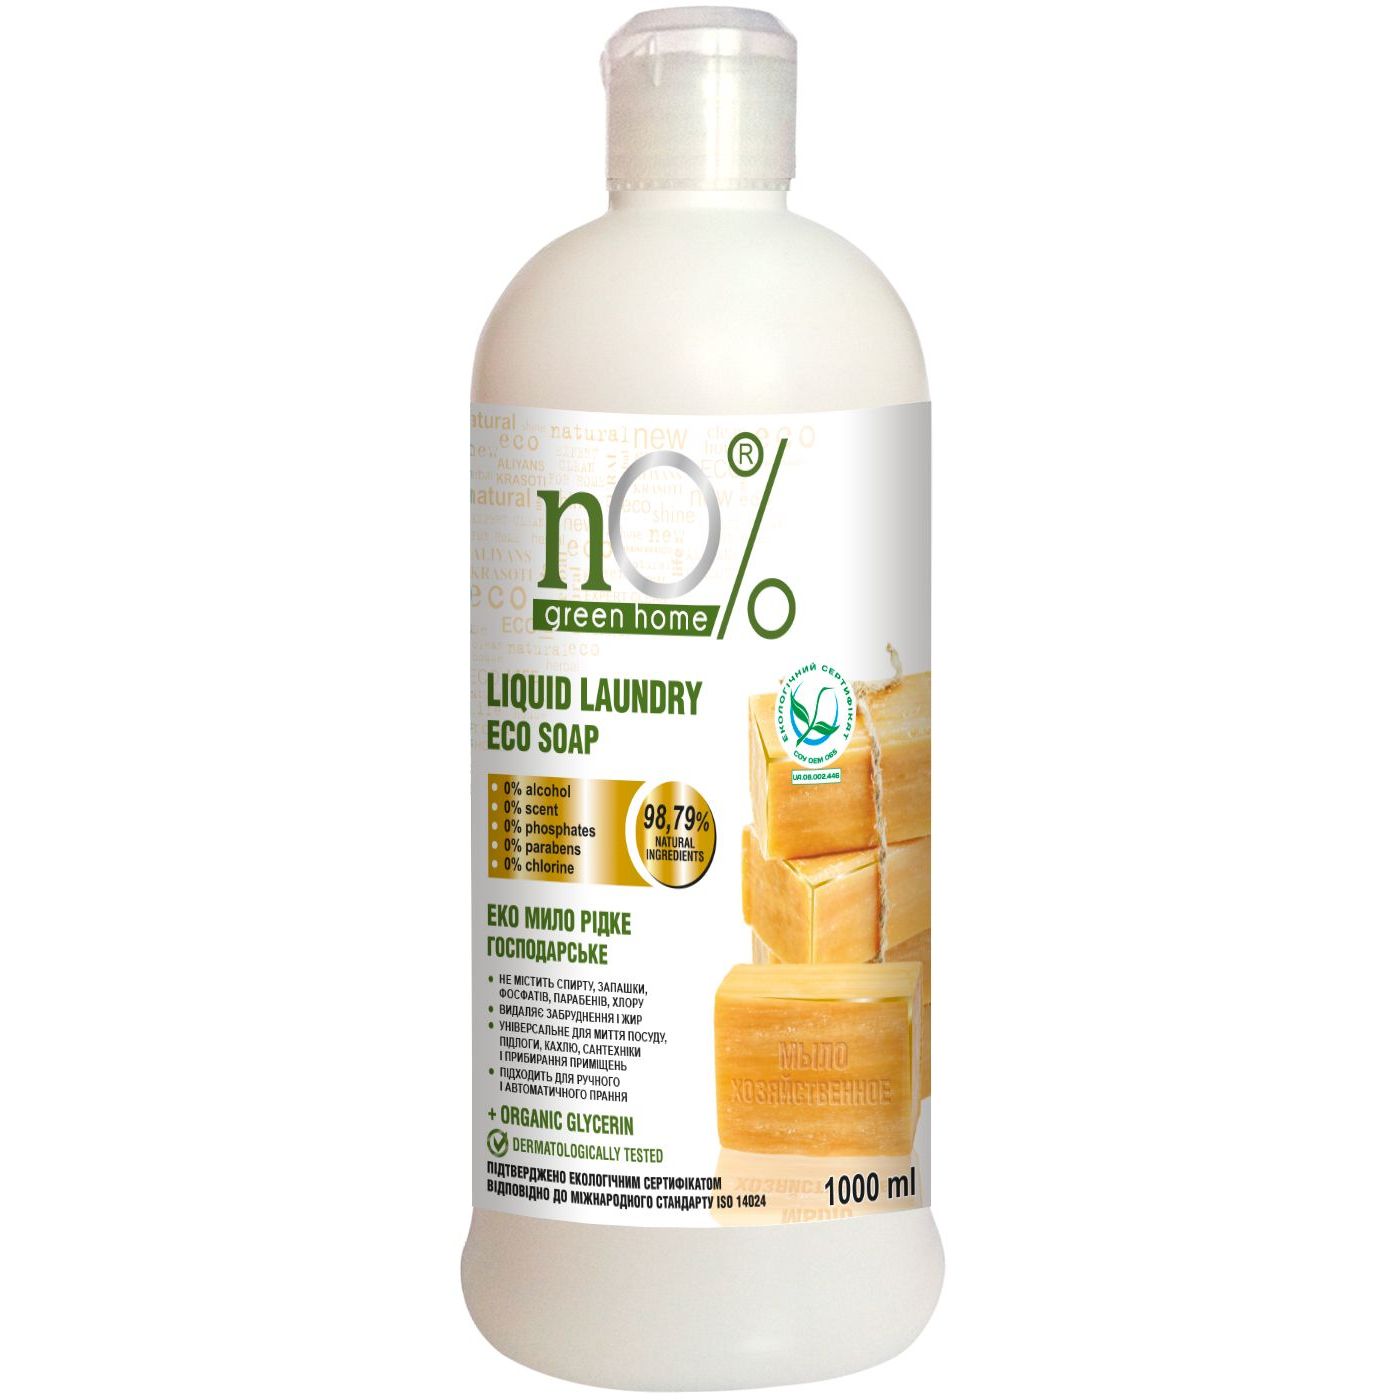 ЭКО Хозяйственное жидкое мыло nO% green home, 1 л - фото 1